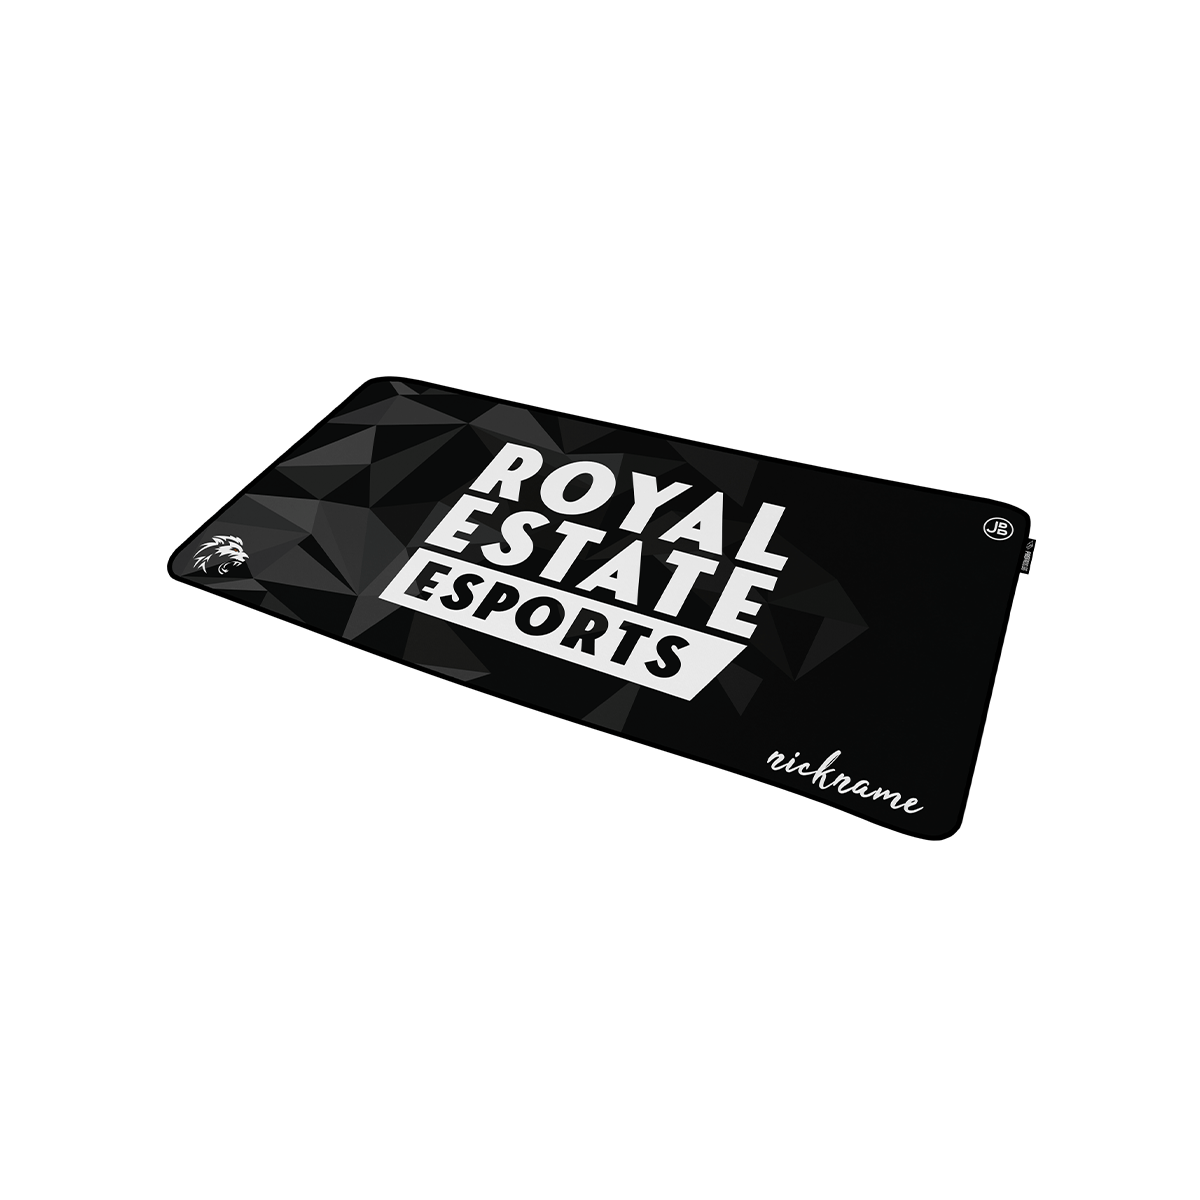 ROYAL ESTATE - Mousepad - XXL Team